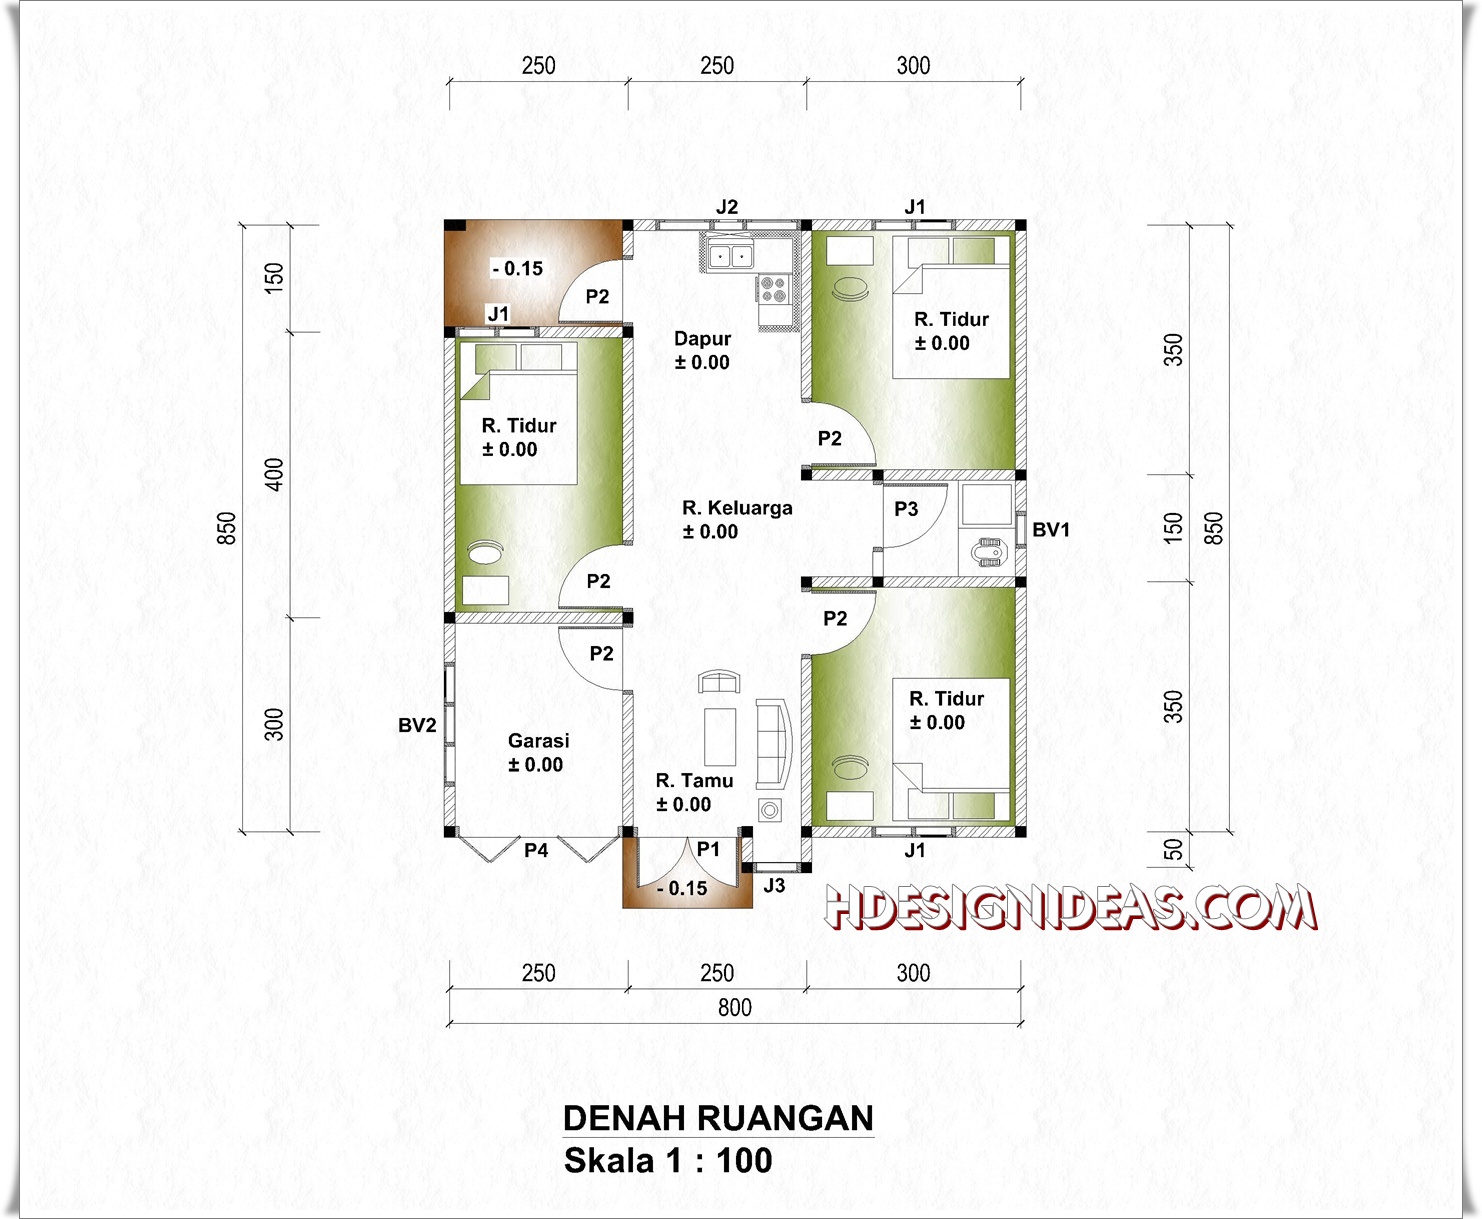 Denah Rumah Tinggal Ukuran 8 m x 8,5 m  Home Design and Ideas